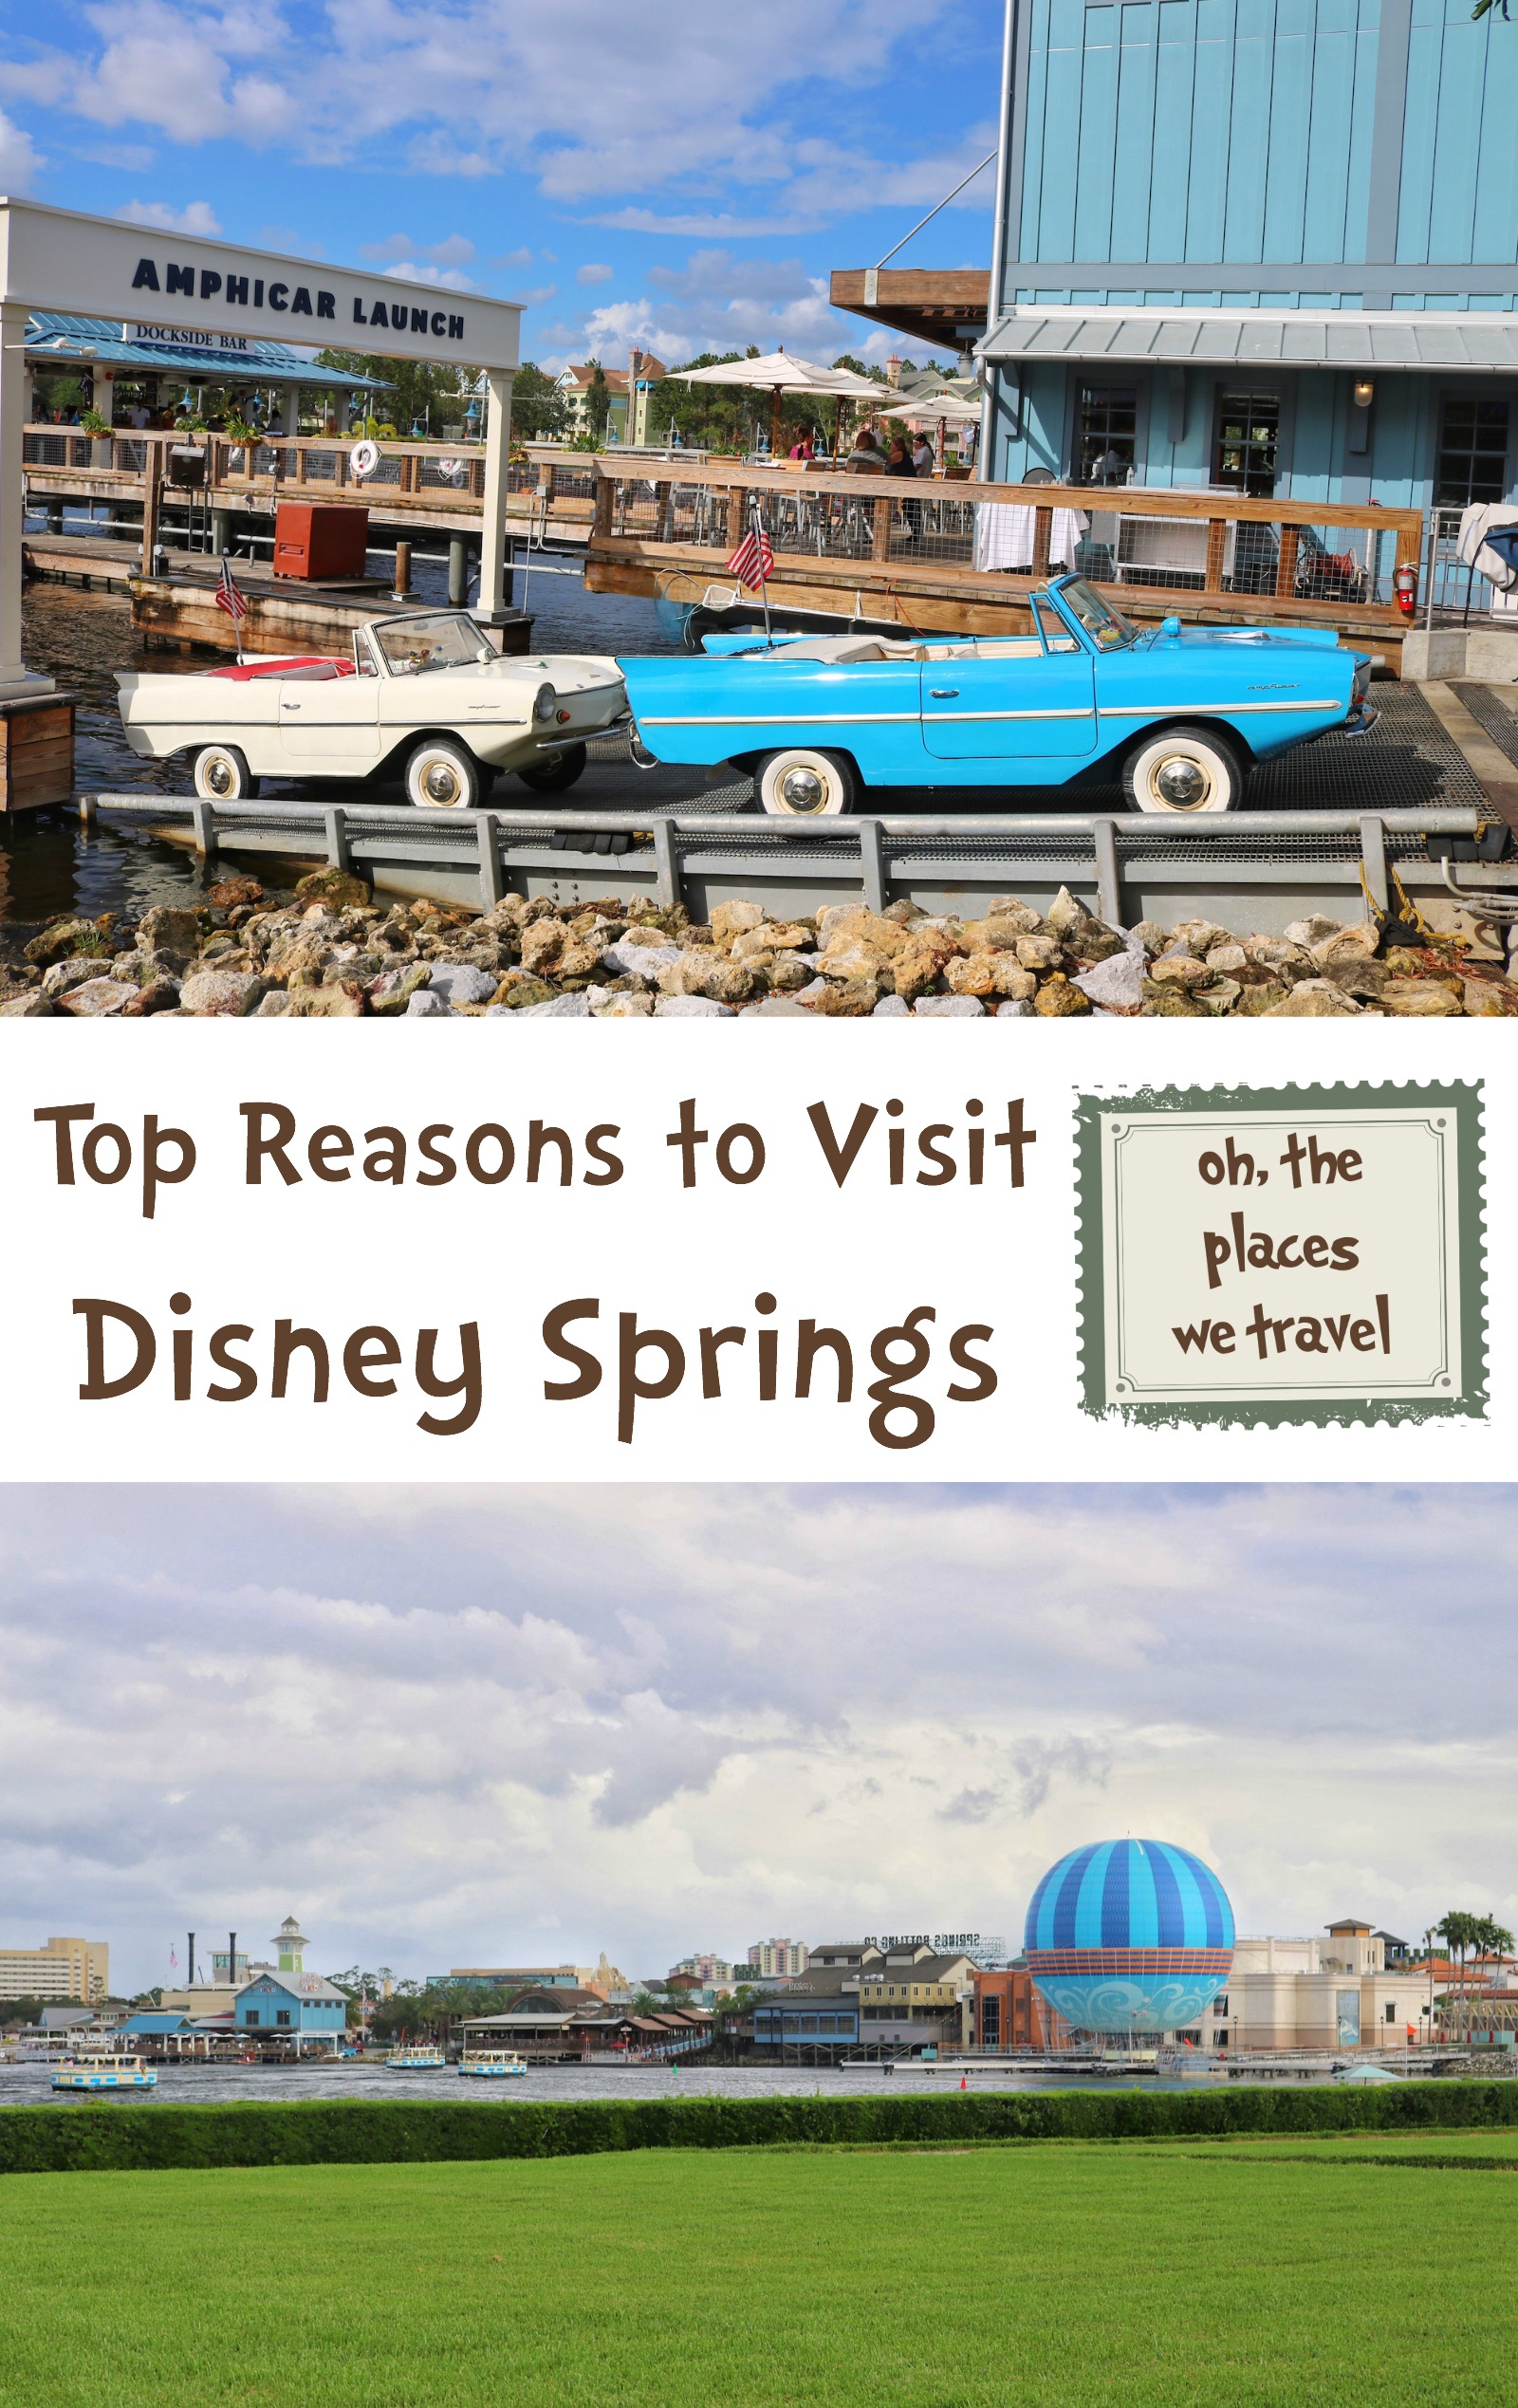 Top Reasons to Visit Disney Springs